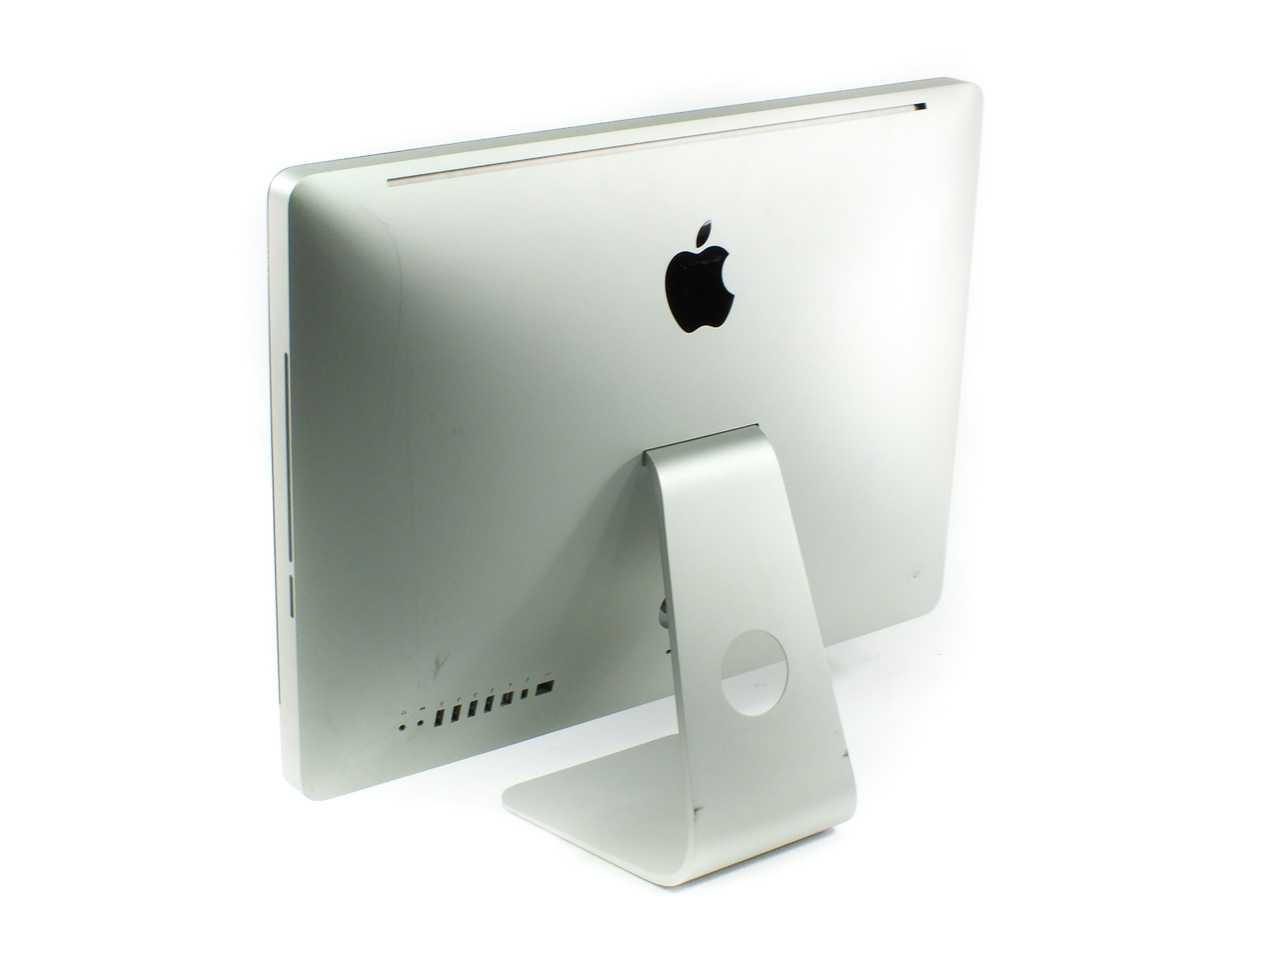 Apple MC309LL/A 21.5 inch iMac Core i5 2.5 GHz 4GB RAM 500GB HDD Mid-2011